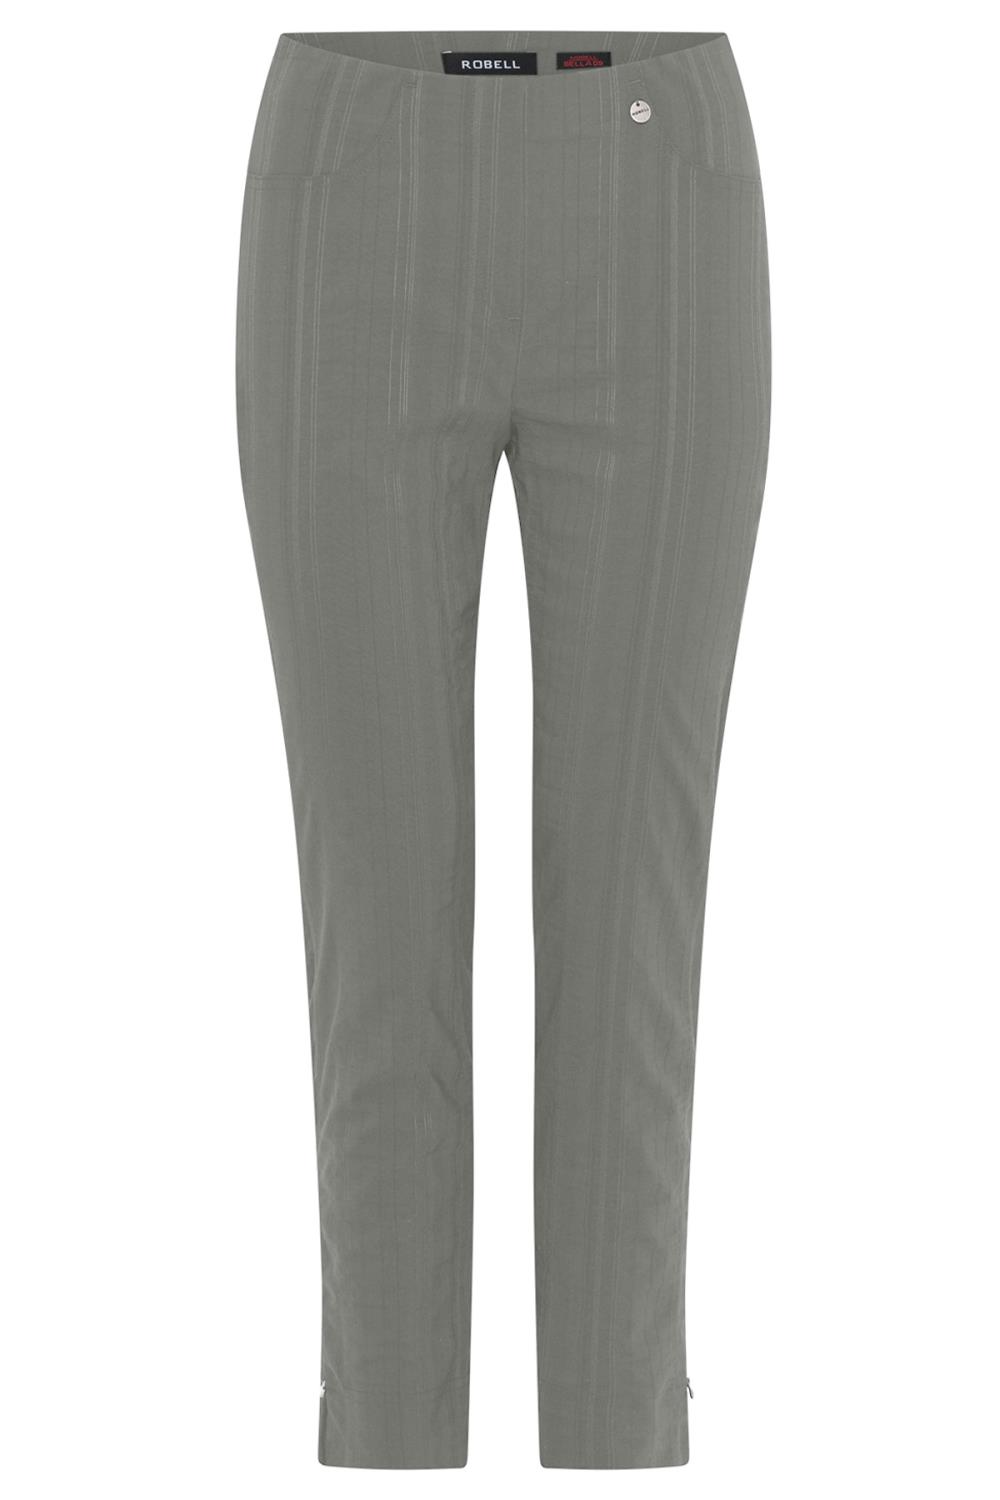 Robell Bella bukse, 68 cm, mosegrønn